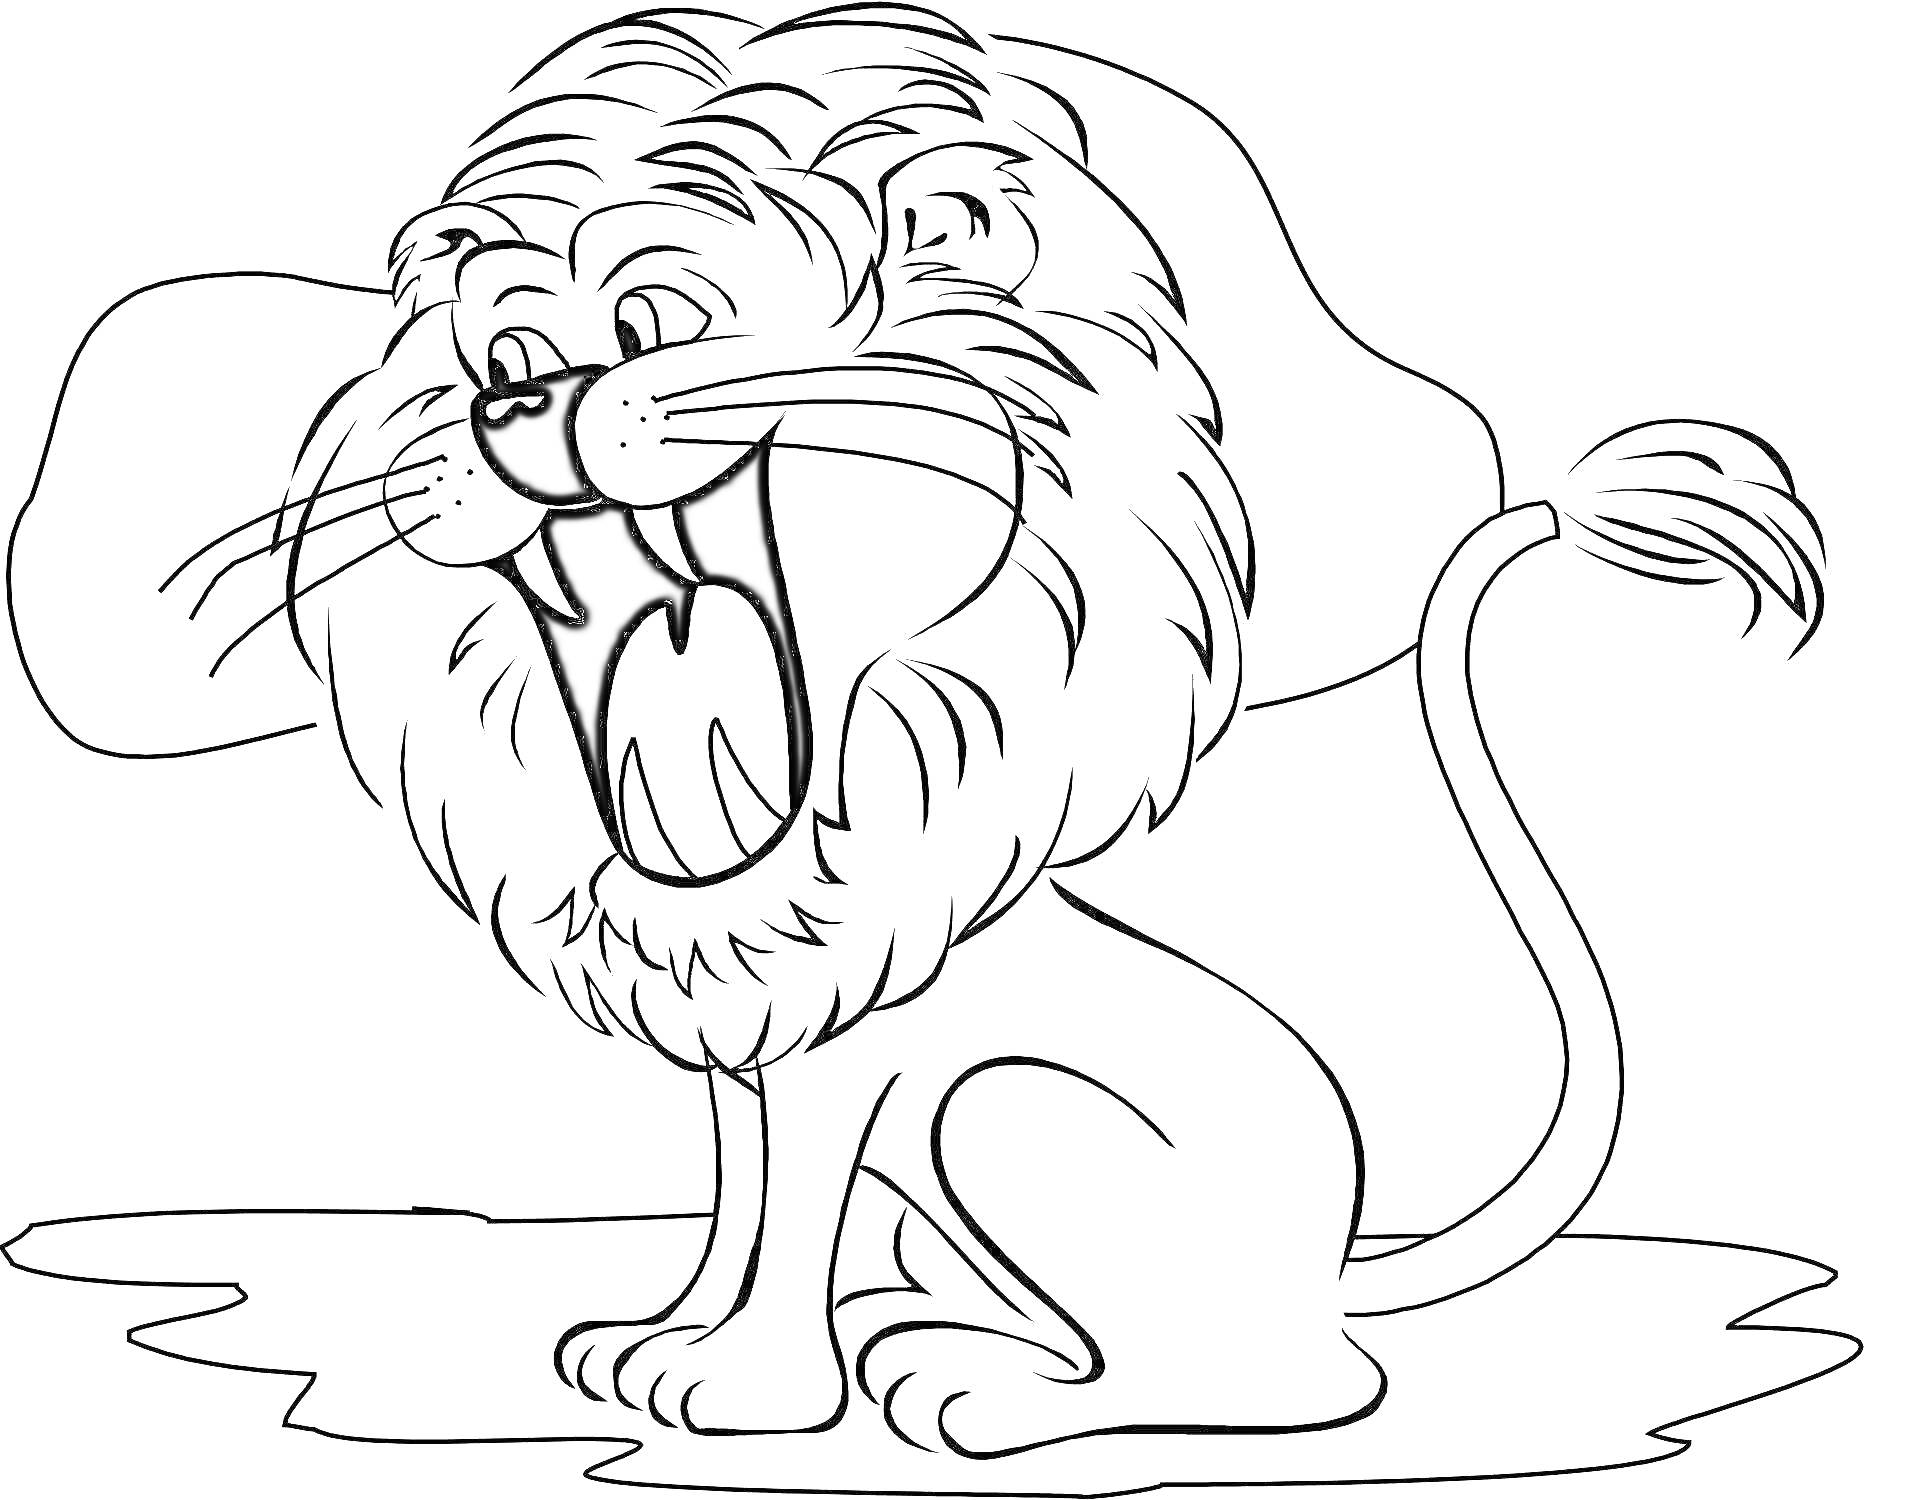 Раскраска Раскраска с изображением льва с открытой пастью, сидящего на земле